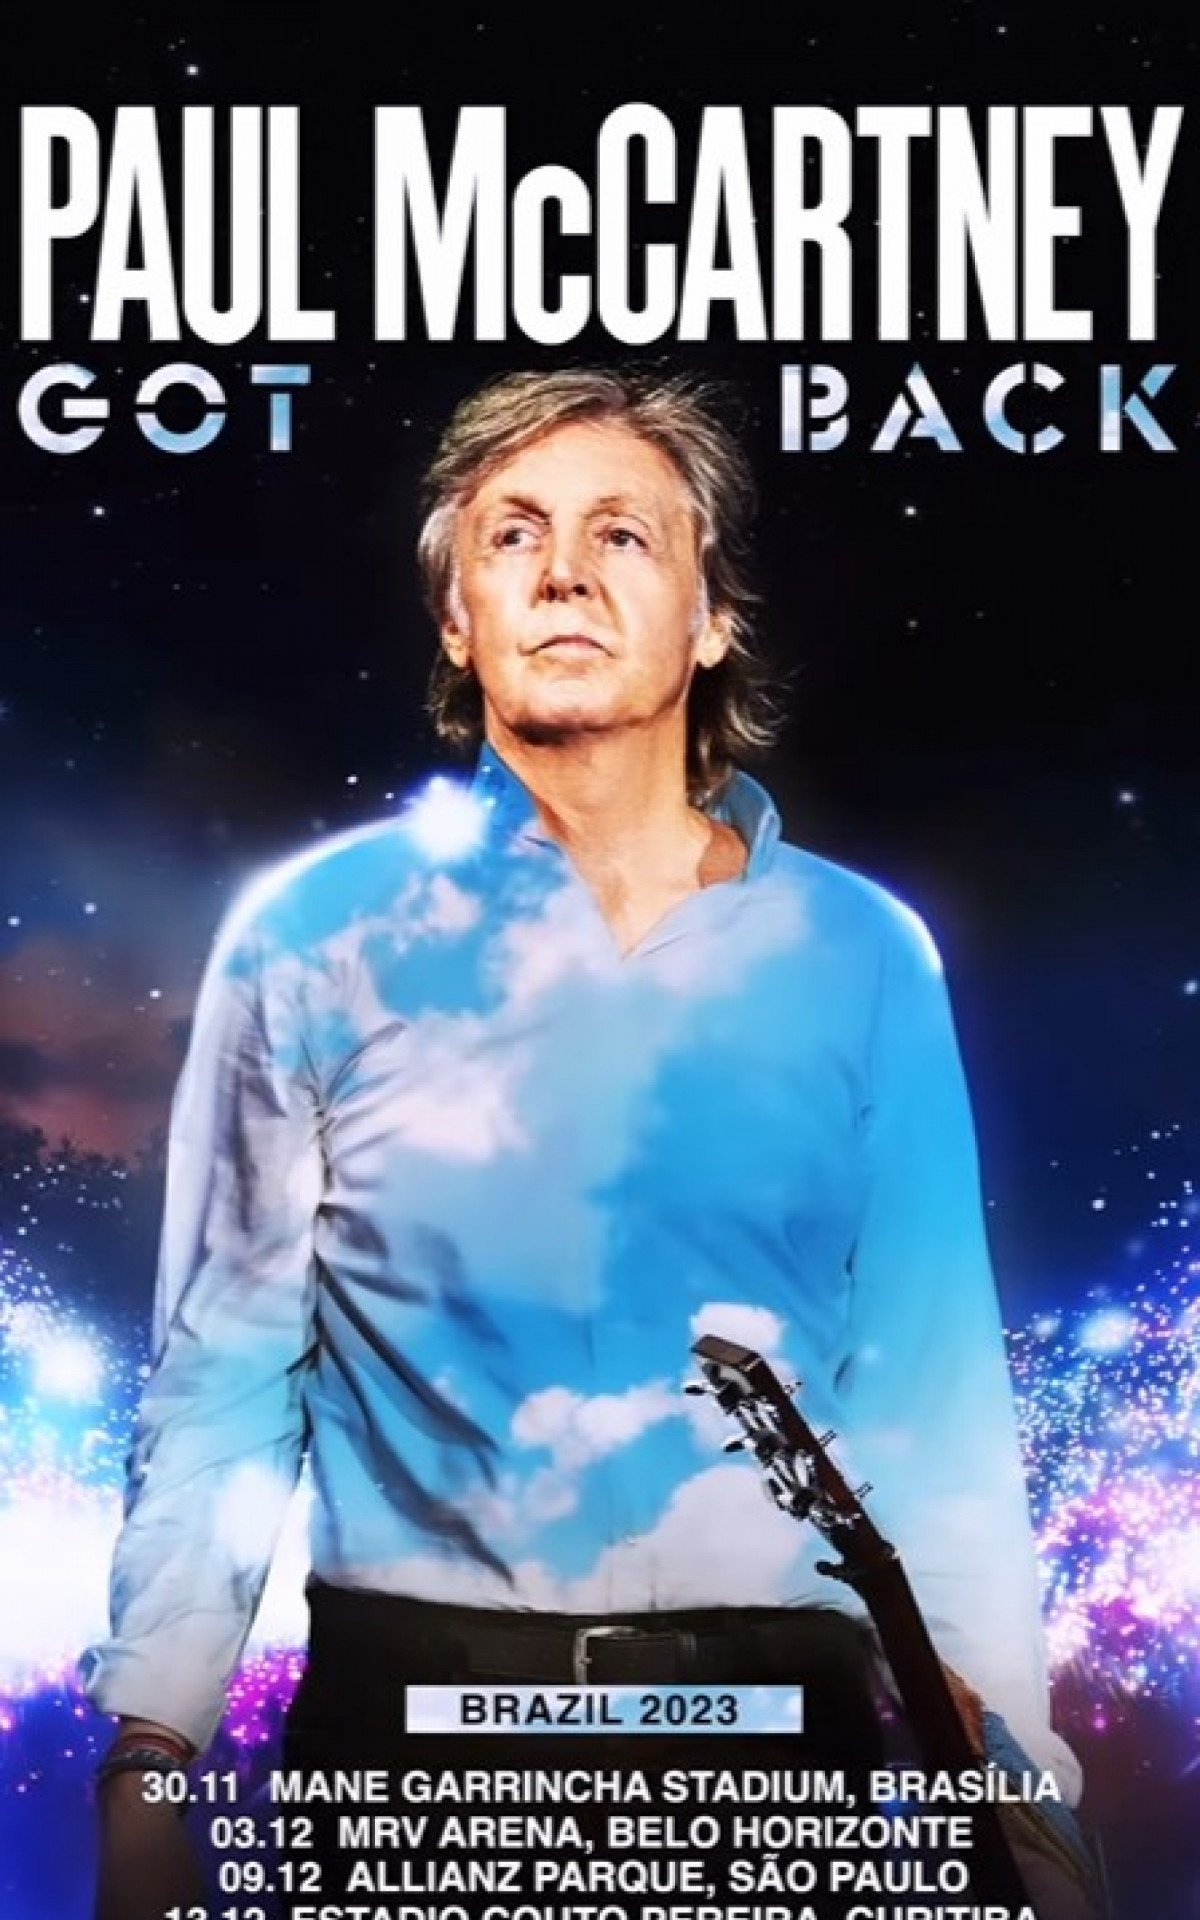 Paul McCartney impressiona com gírias brasileiras durante shows em São Paulo:  'O pai tá on